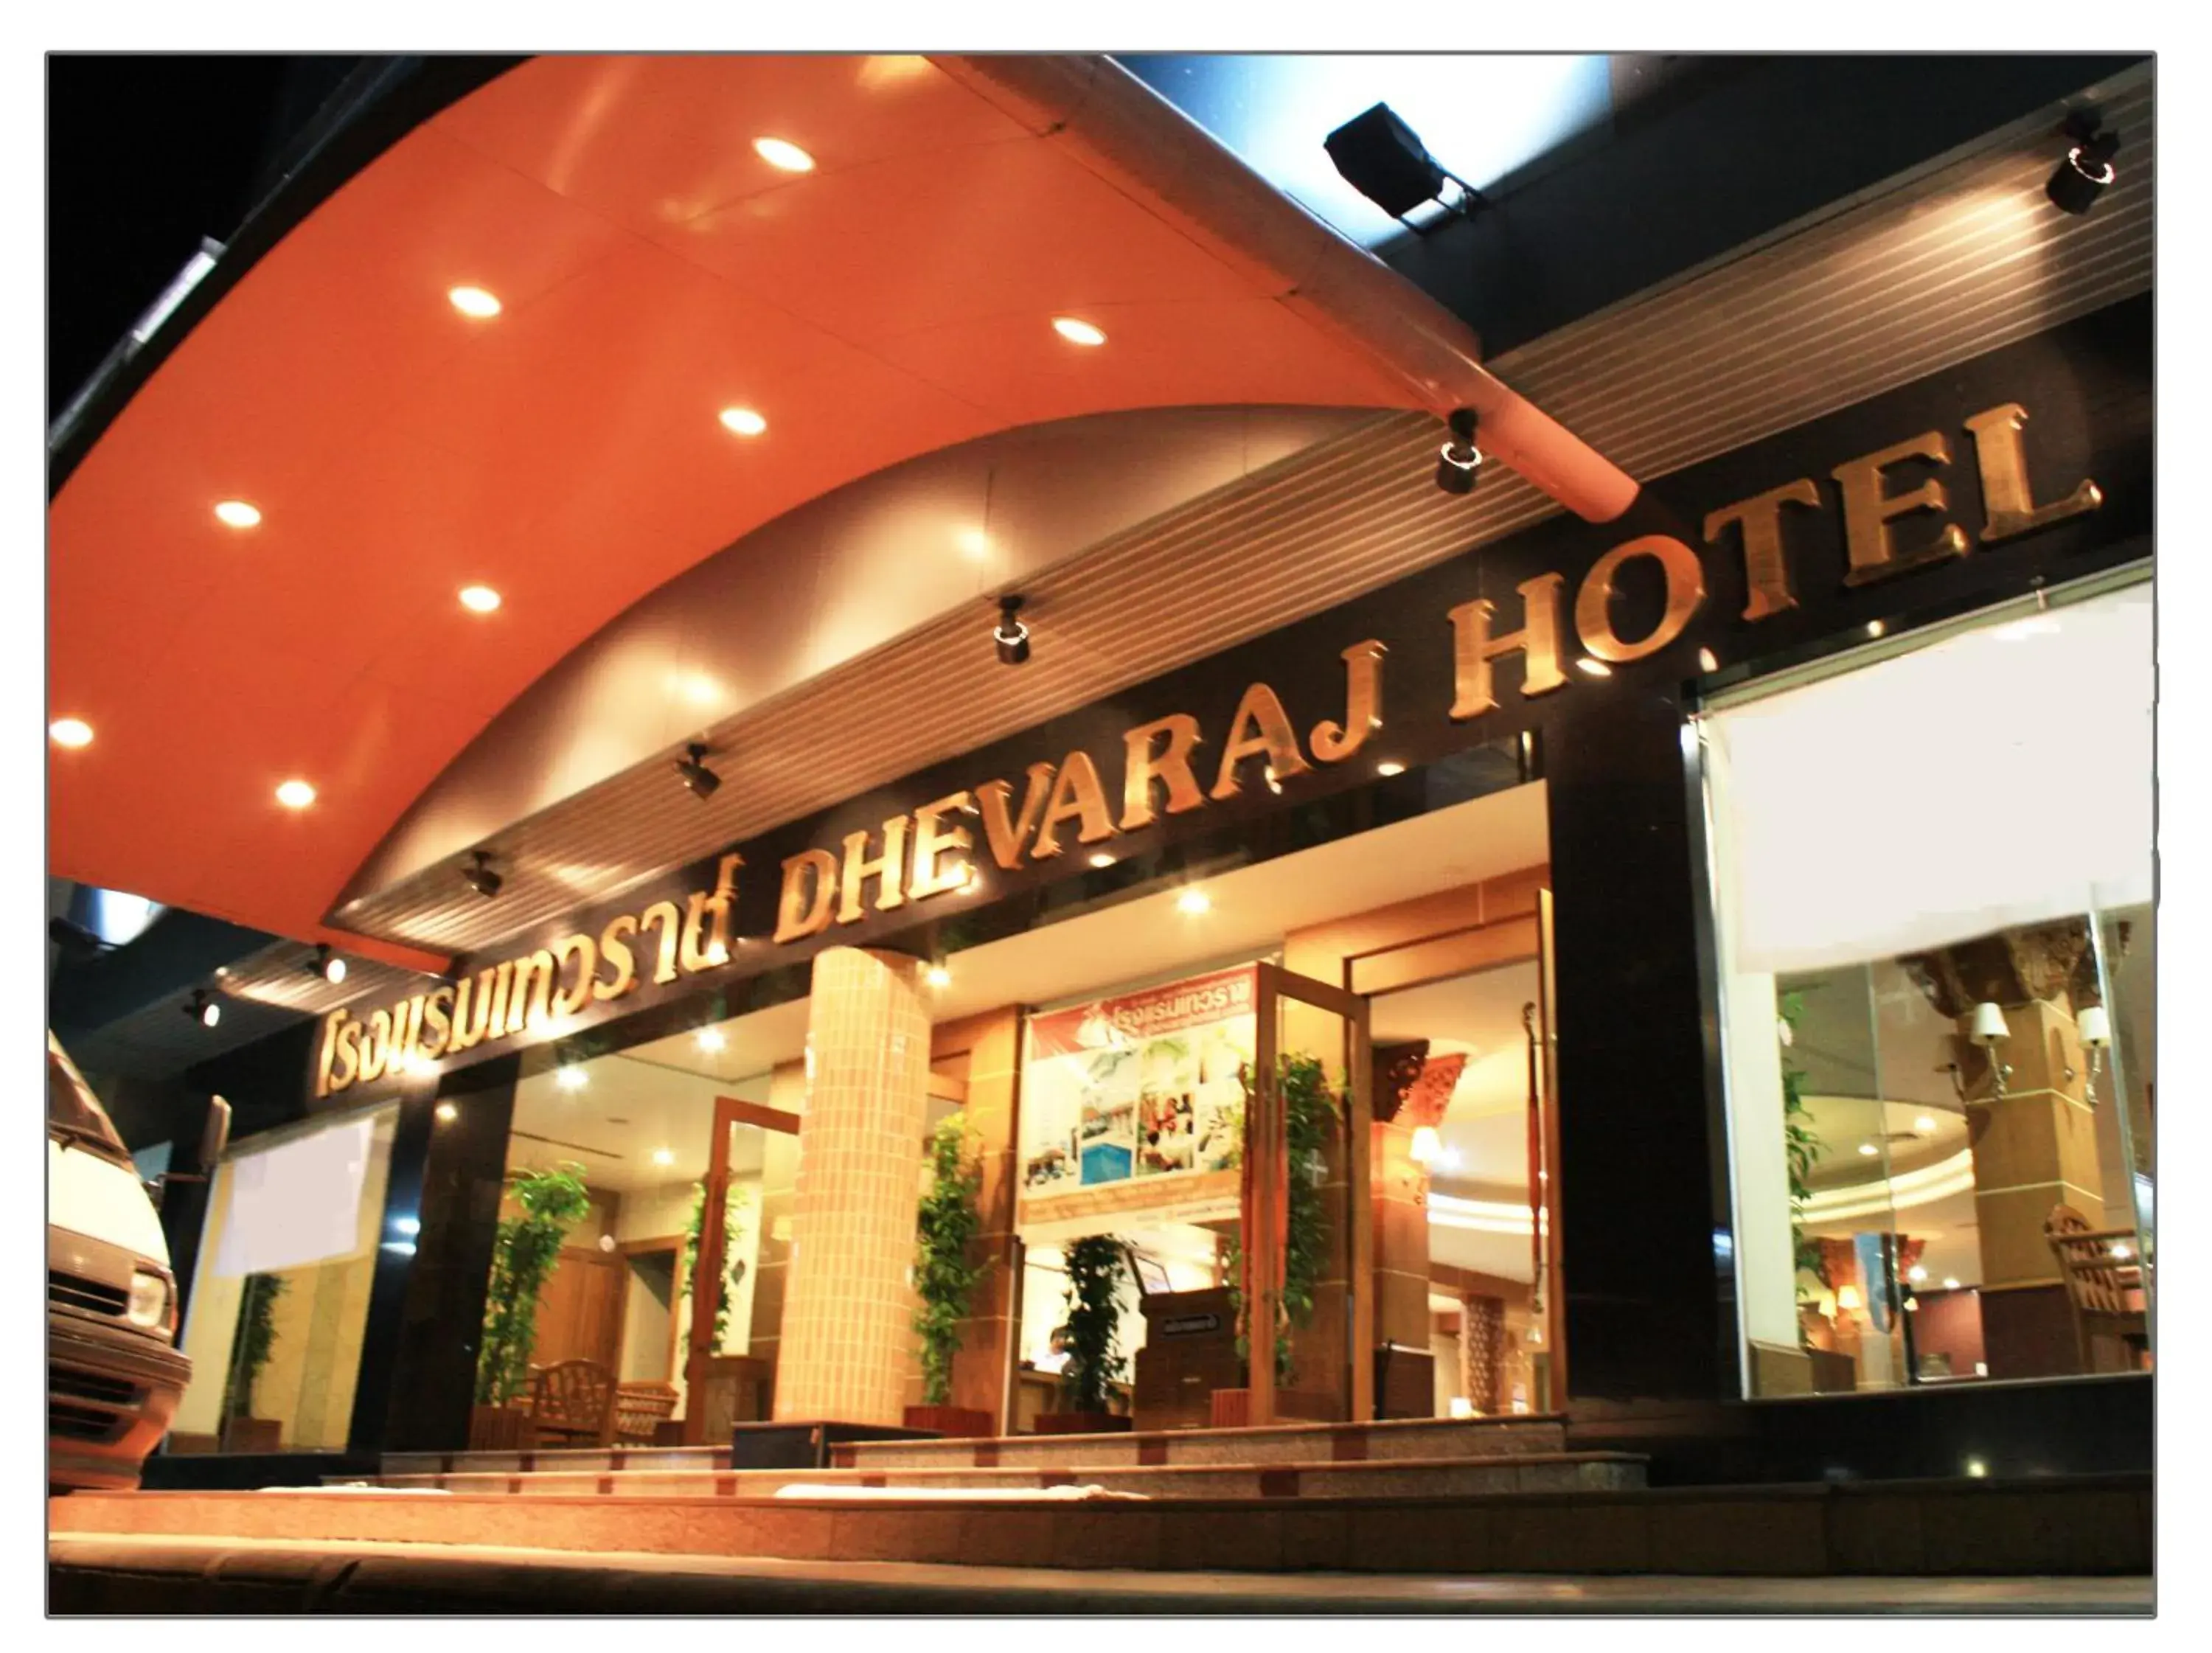 Facade/entrance in Dhevaraj Hotel